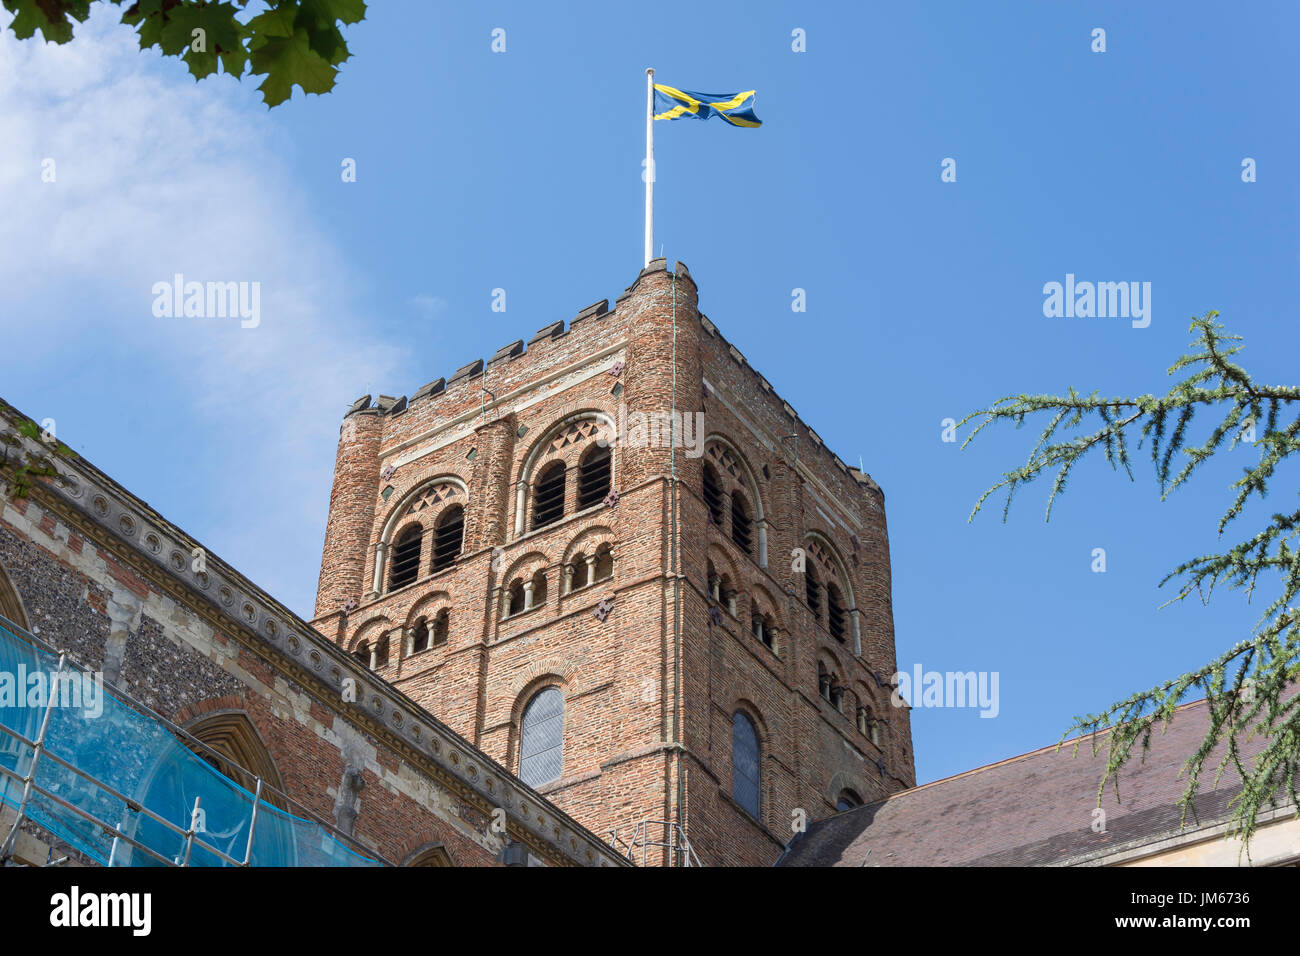 Tour de l'église abbatiale, St Albans, Hertfordshire, Angleterre, Royaume-Uni Banque D'Images